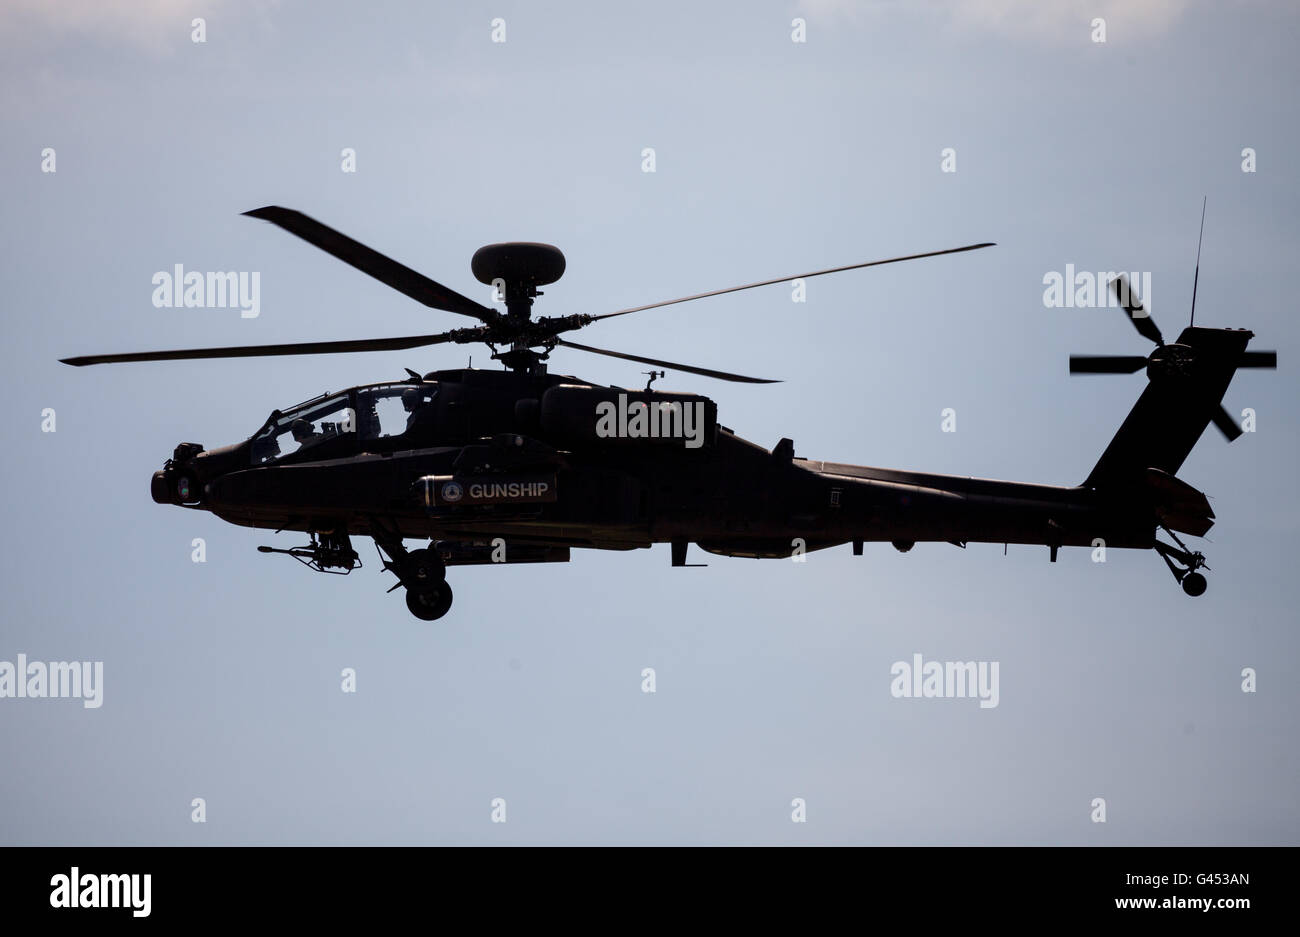 Berlín / ALEMANIA - Junio 3, 2016: Boing AH-64 Apache vuelos en el aeropuerto de Schoenefeld, Berlín / Alemania en junio 3, 2016 Foto de stock